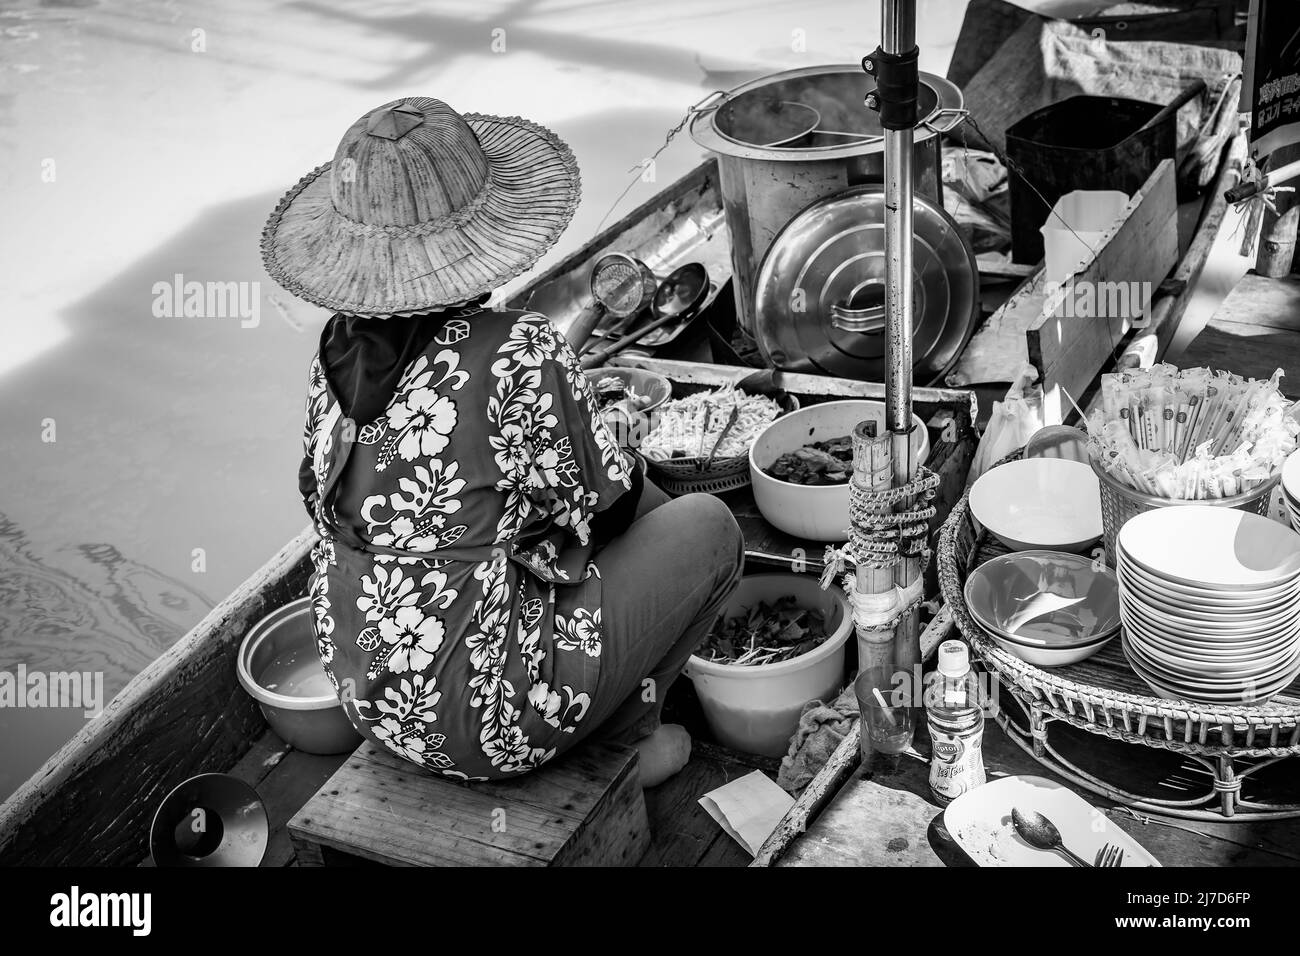 Pattaya, Thailandia - 6 dicembre 2009: Venditore di cibo di strada in barca al mercato galleggiante di Pattaya. Fotografia in bianco e nero Foto Stock